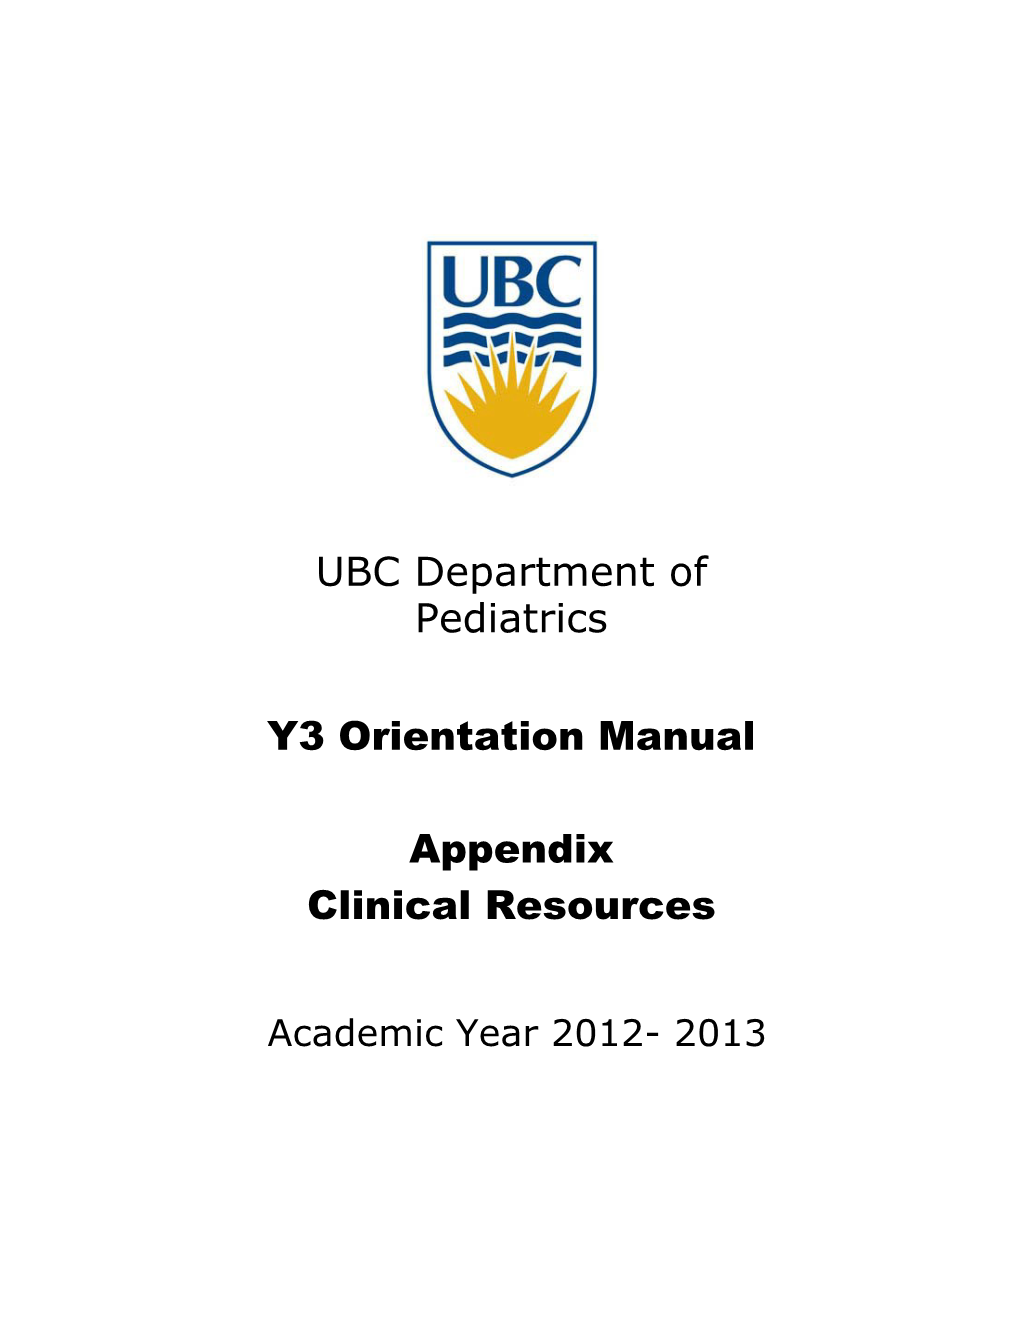 UBC Department of Pediatrics Y3 Orientation Manual Appendix